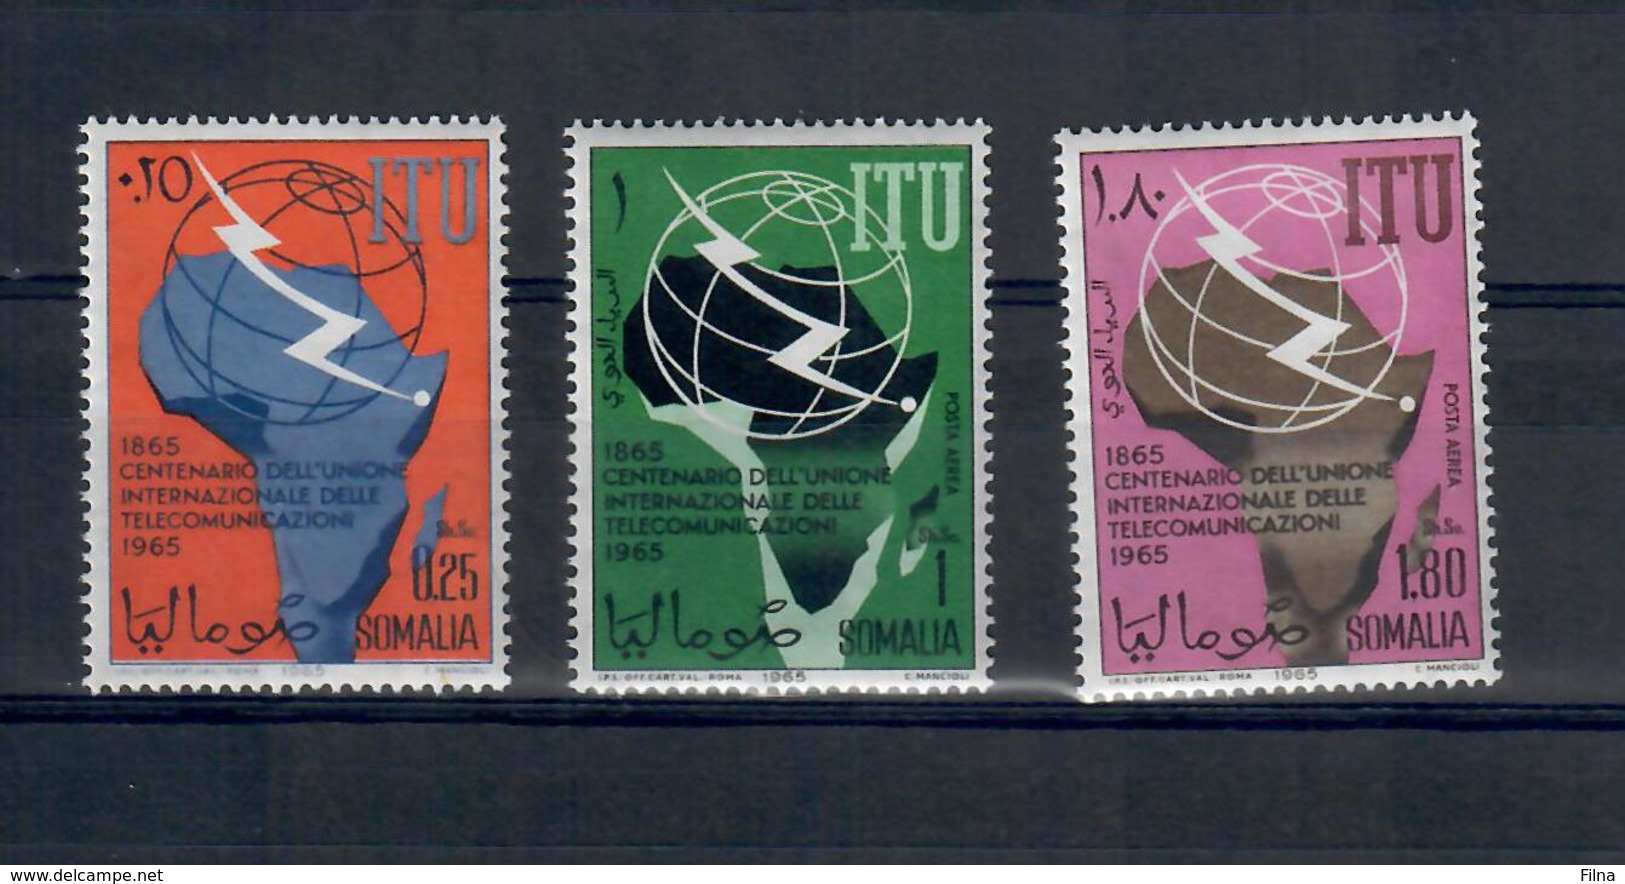 SOMALIA 1965 - 100 ANNI ITU TELECOMUNICAZIONI  - MNH ** - Somalia (1960-...)